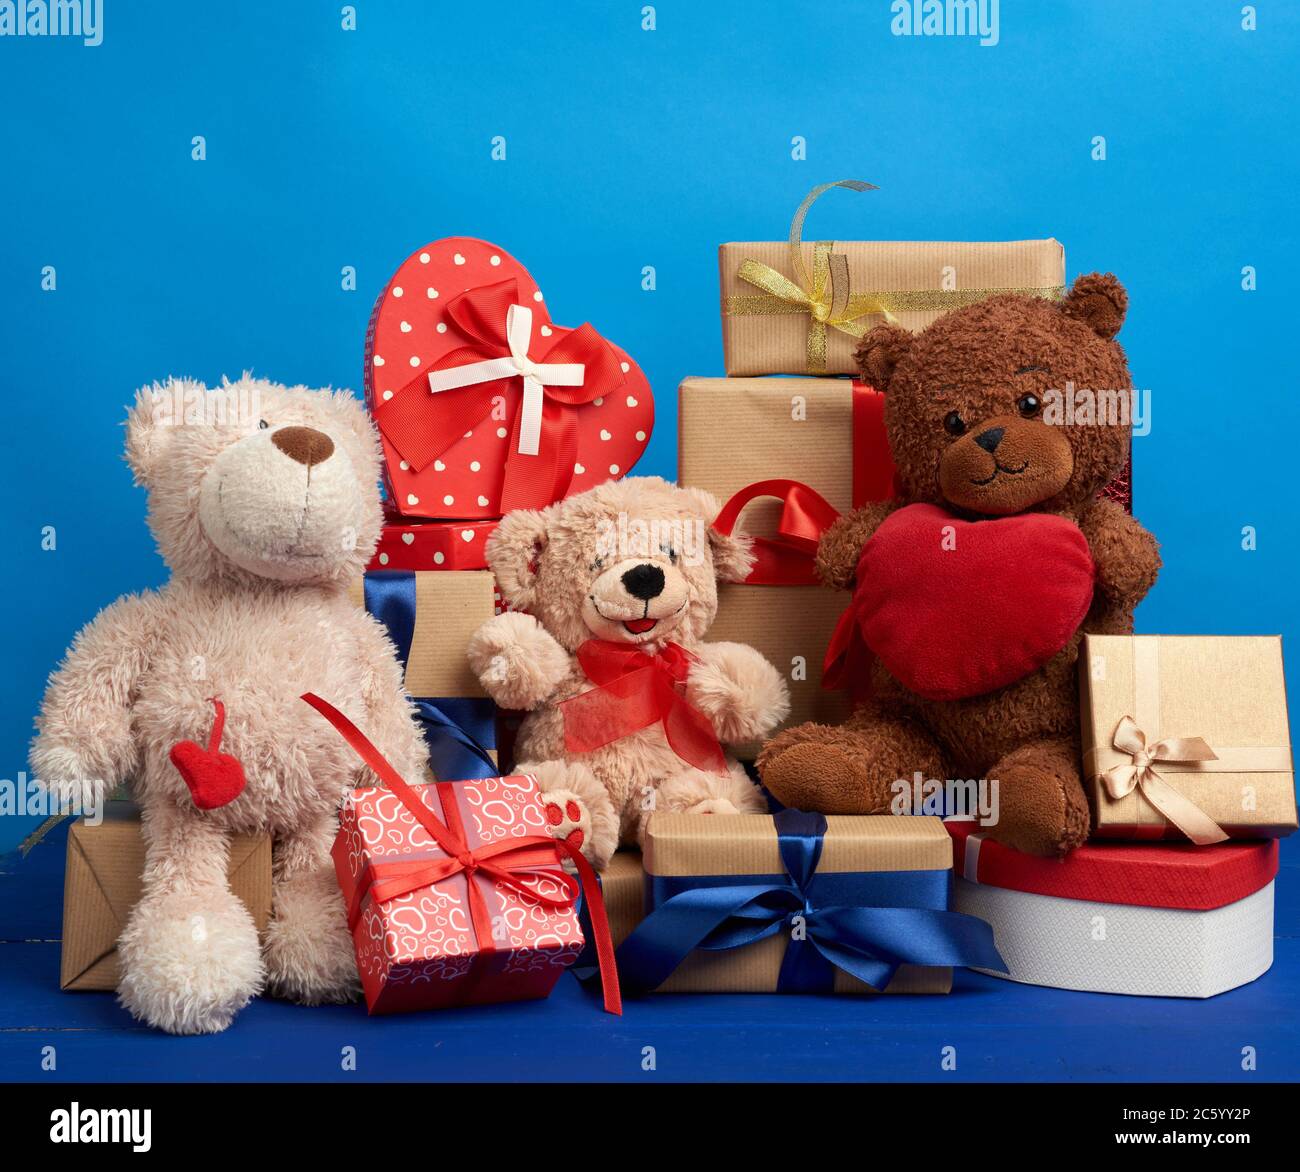 Gift Present Birthday Xmas NEW I LOVE SAILING Teddy Bear Cute Cuddly